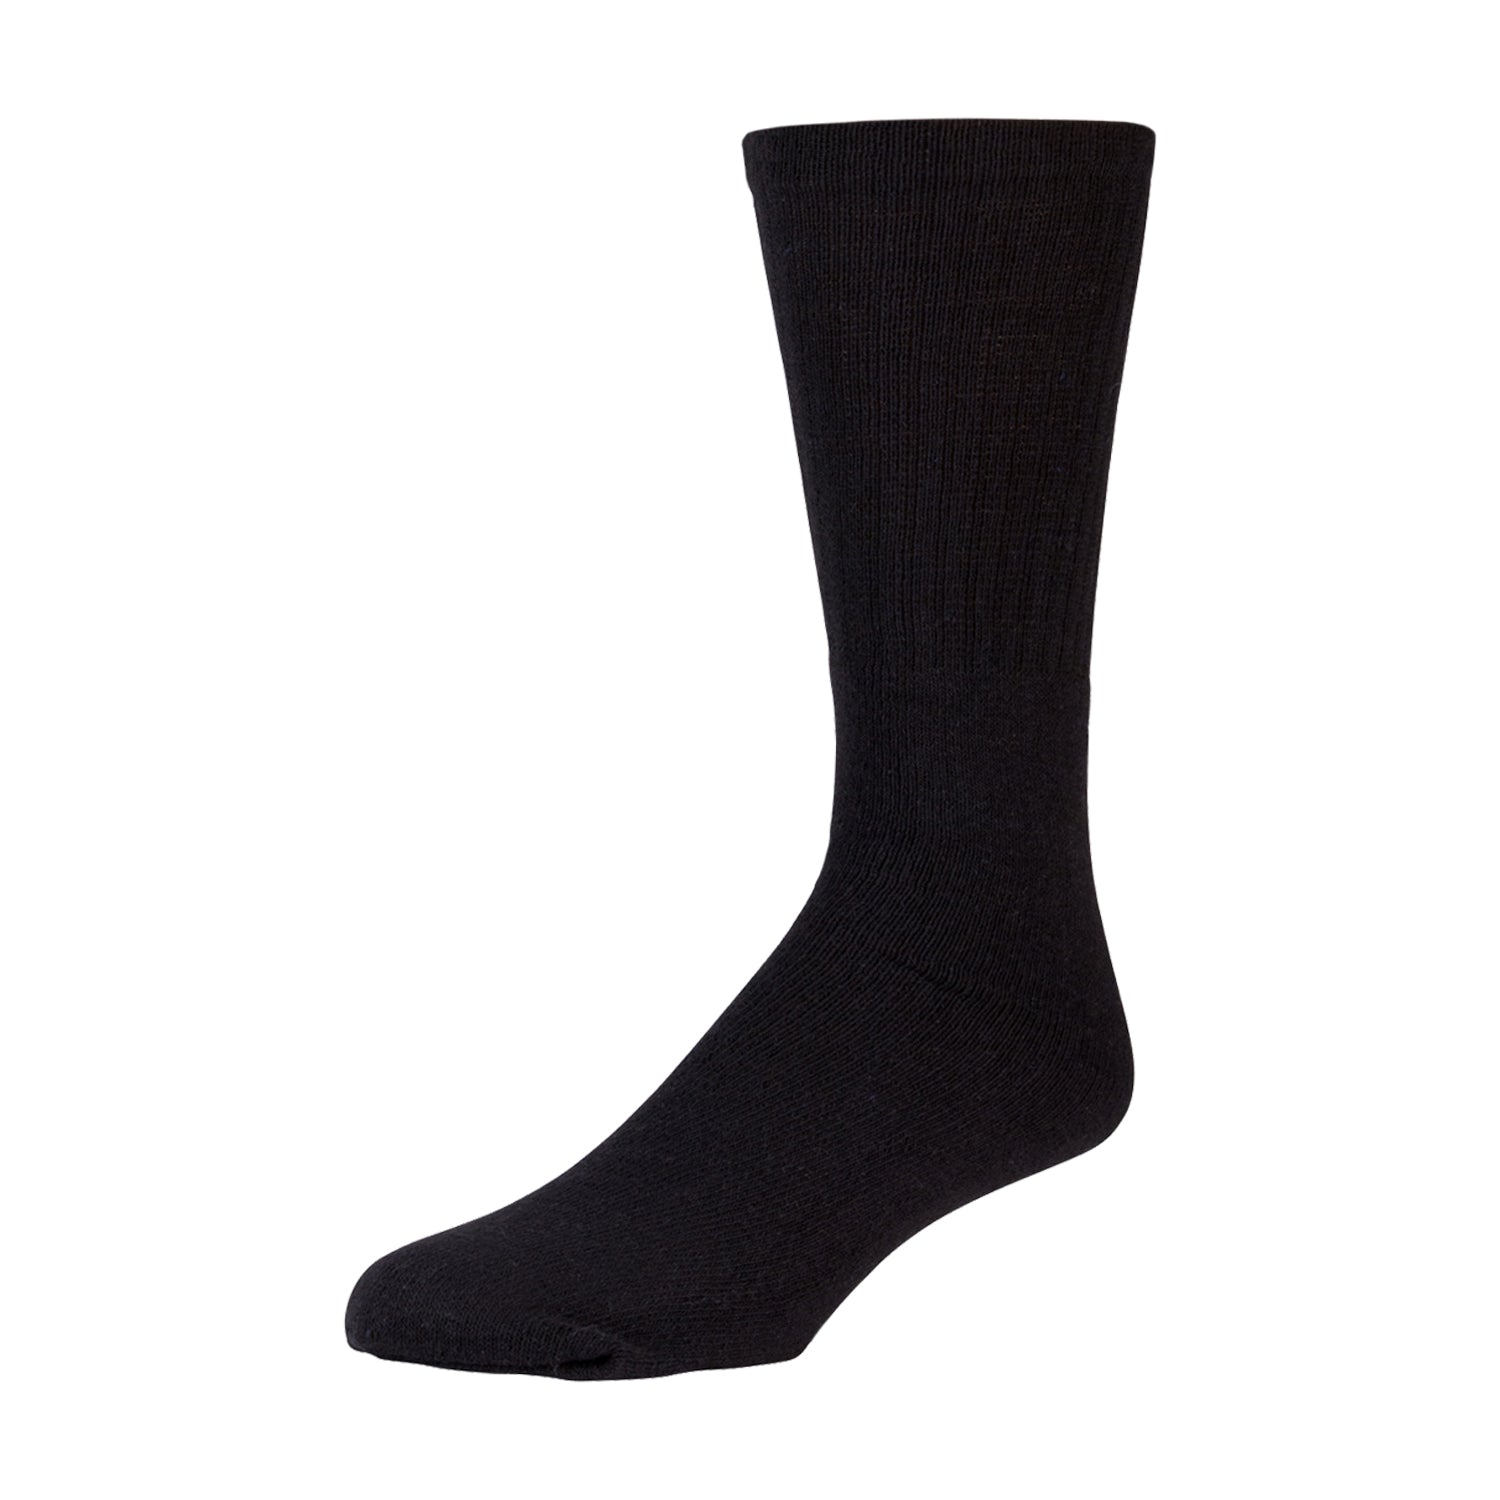 Kids Referee Style Cotton Sports Socks, Size 6-8